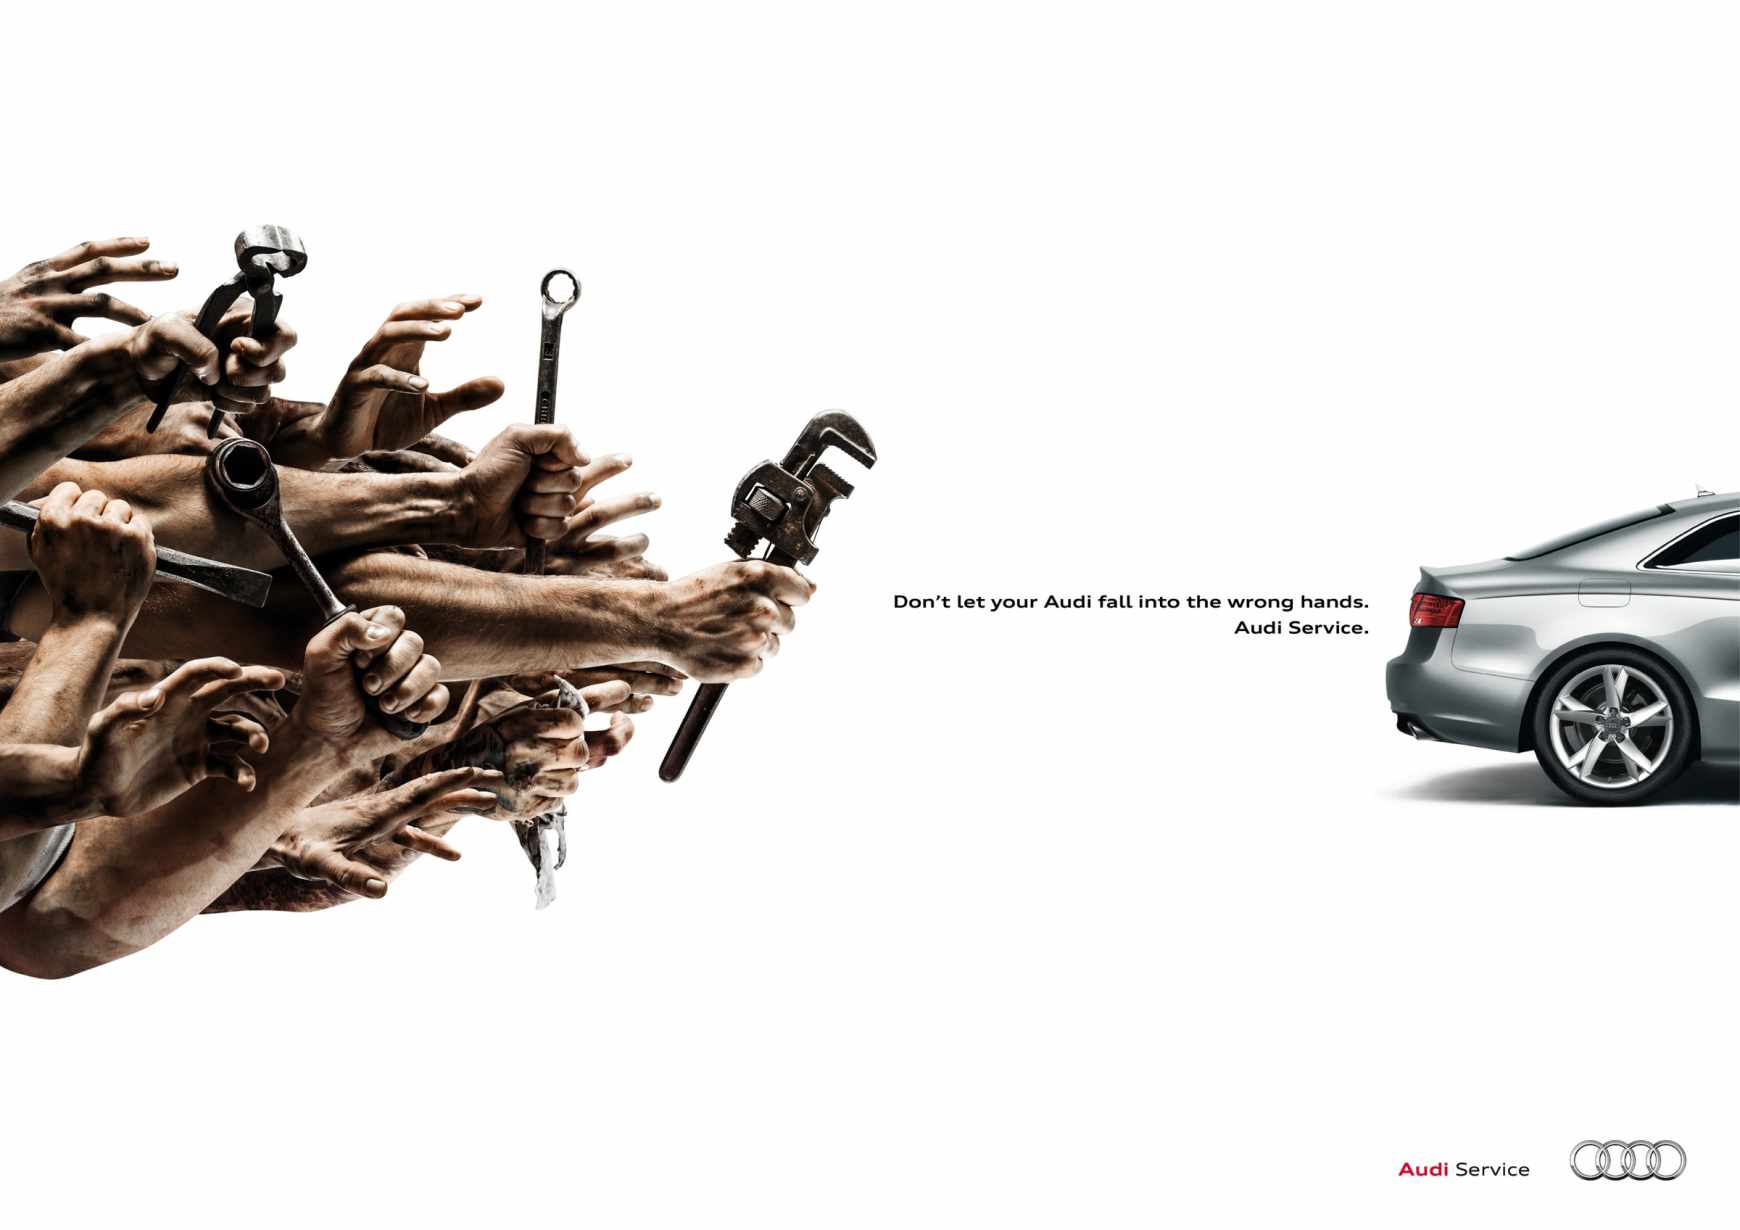 上海策划公司广告分享-奥迪汽车售后服务平面广告创意设计”僵尸“修理工篇1-扳手